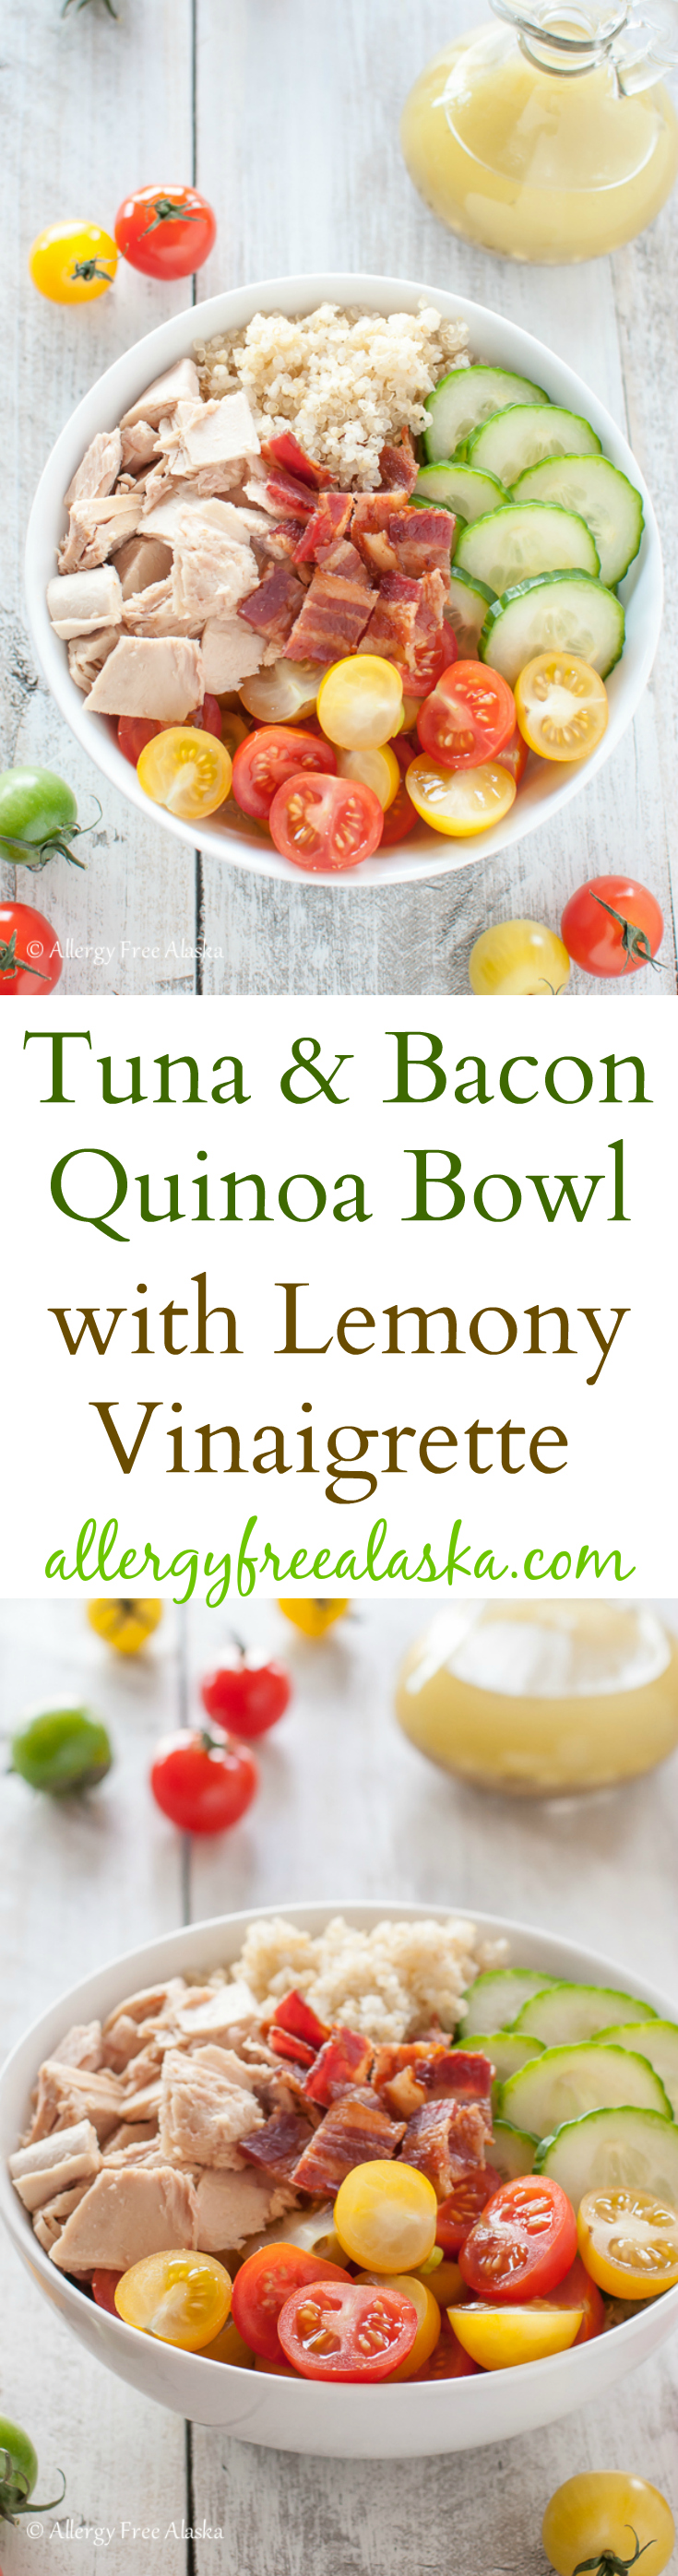 Tuna and Bacon Quinoa Bowl with Lemony Vinaigrette Recipe from Allergy Free Alaska